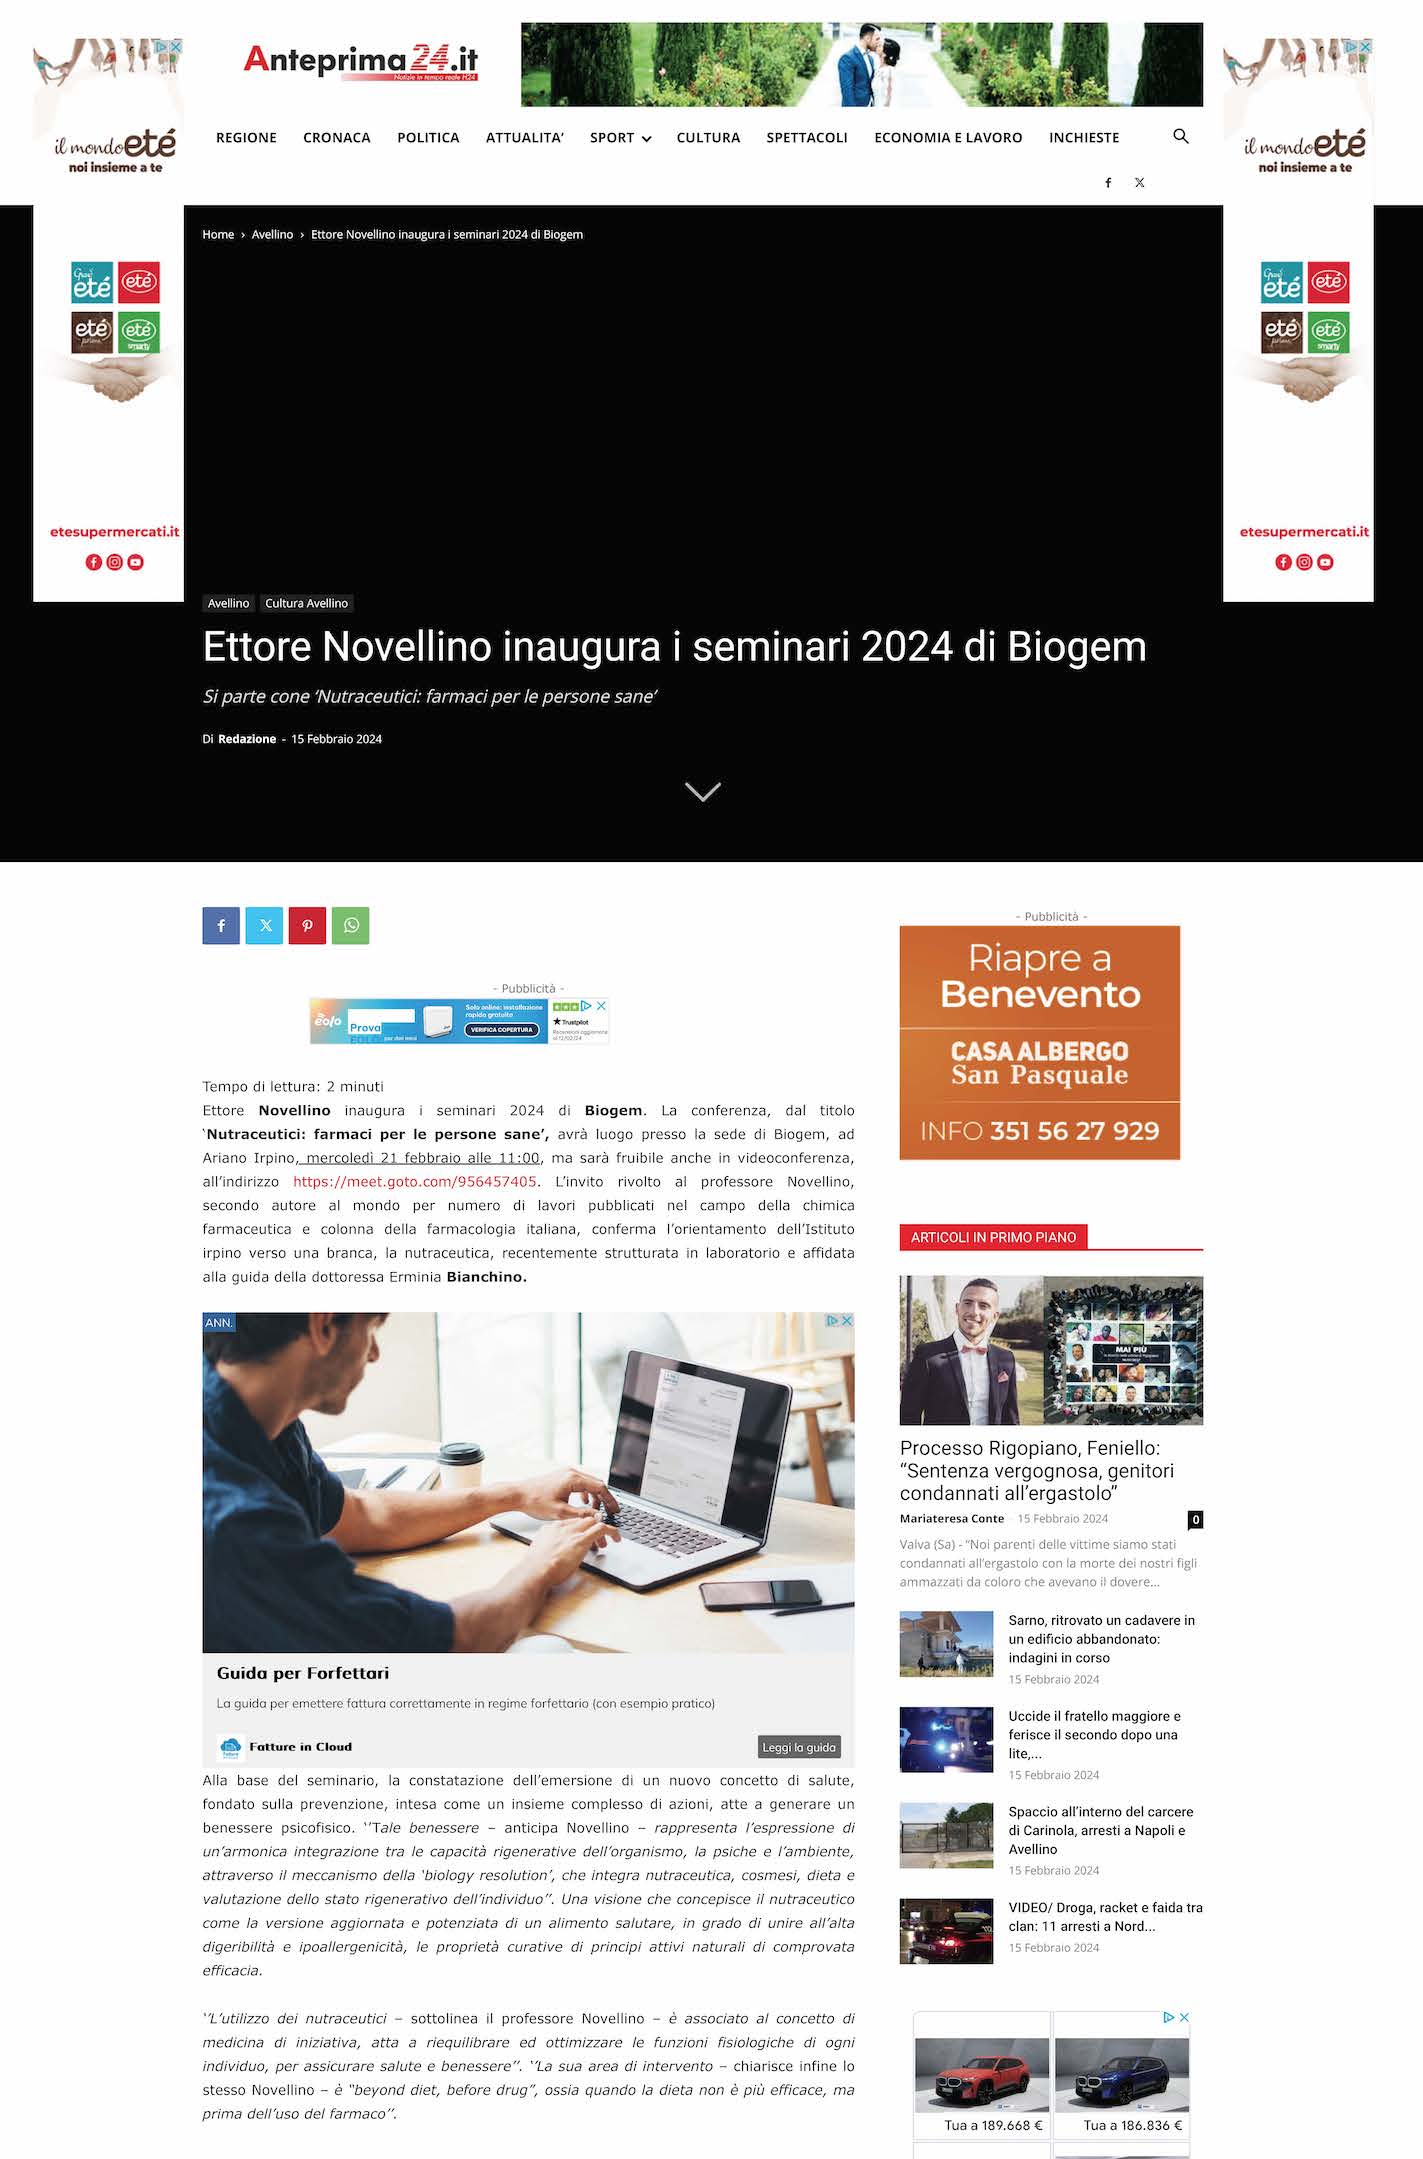 Ettore Novellino inaugura i seminari 2024 di Biogem